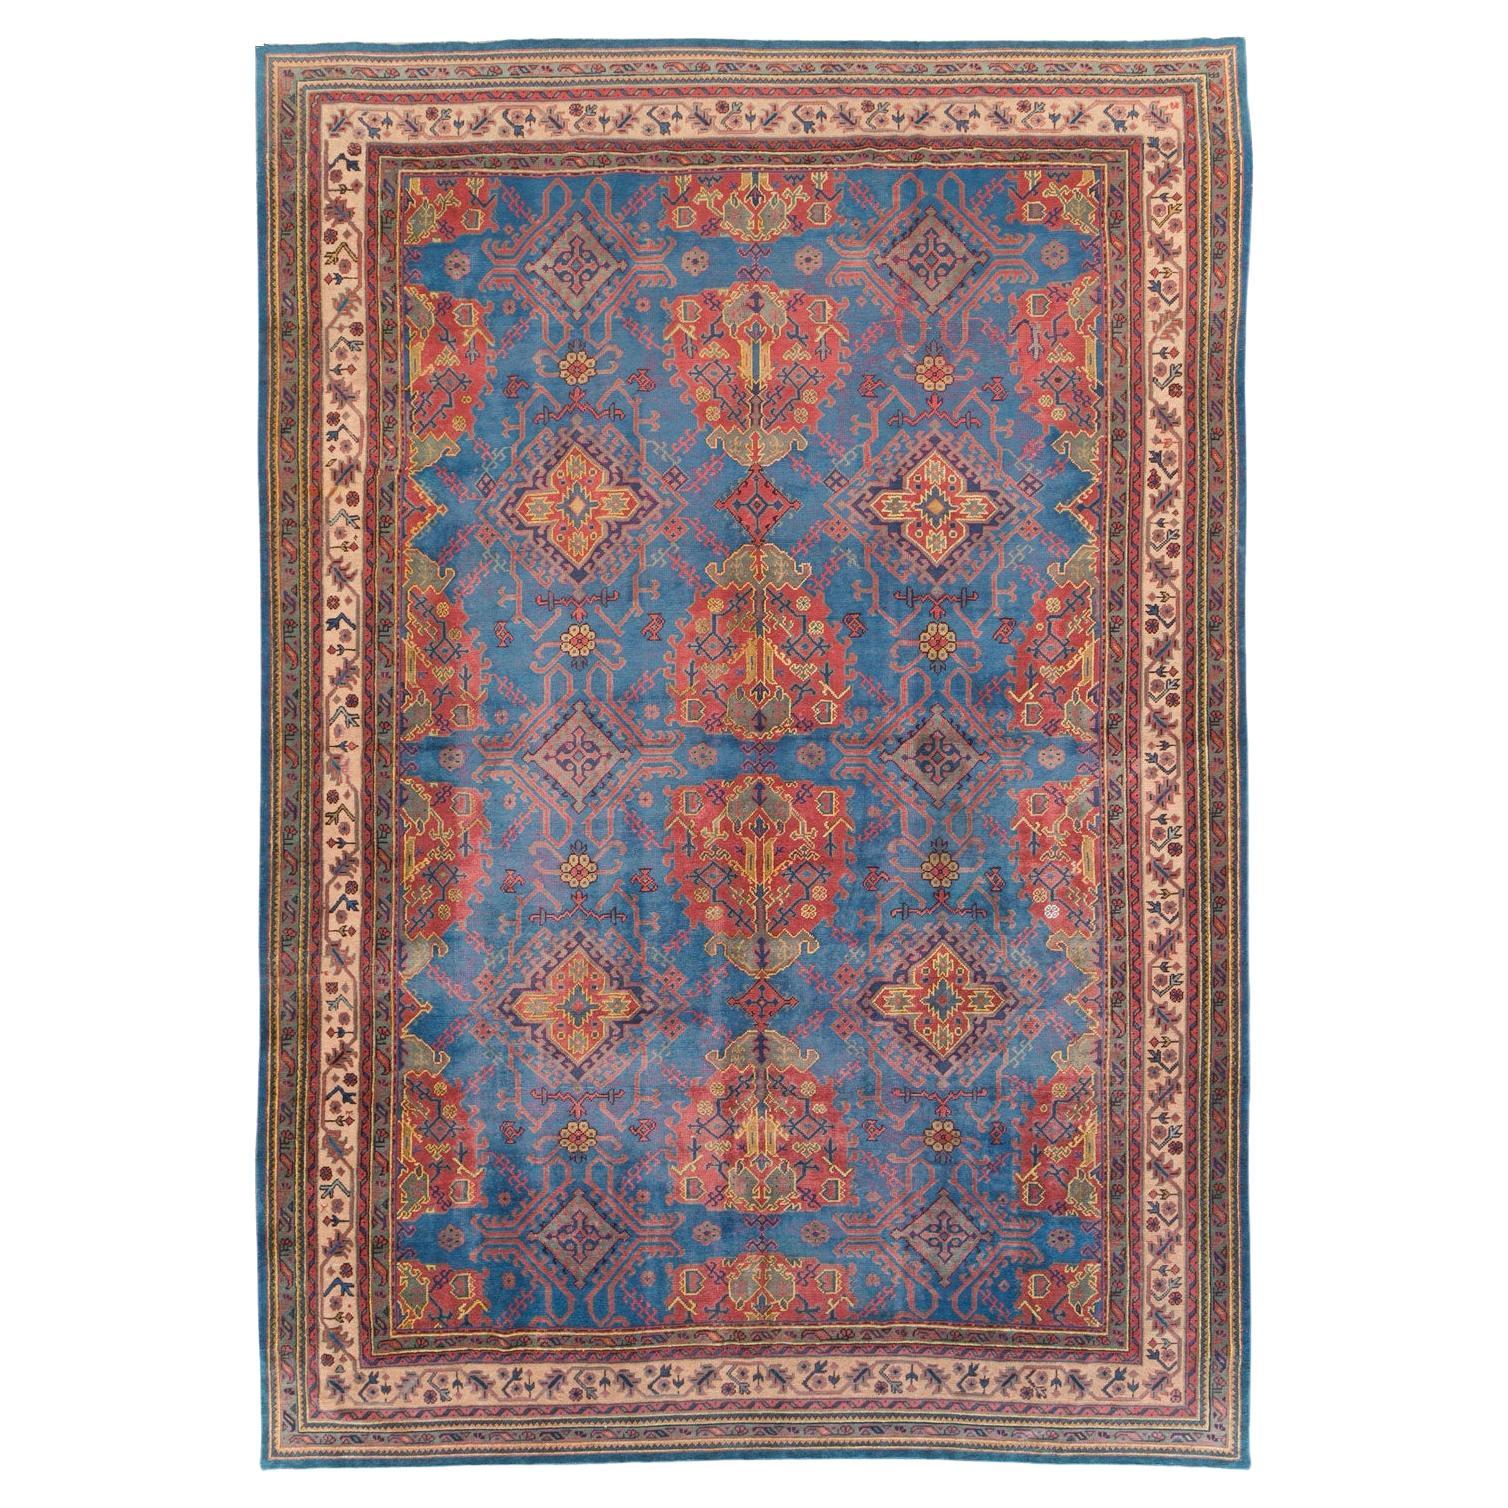 Early 20th Century Handmade Turkish Oushak Large Carpet